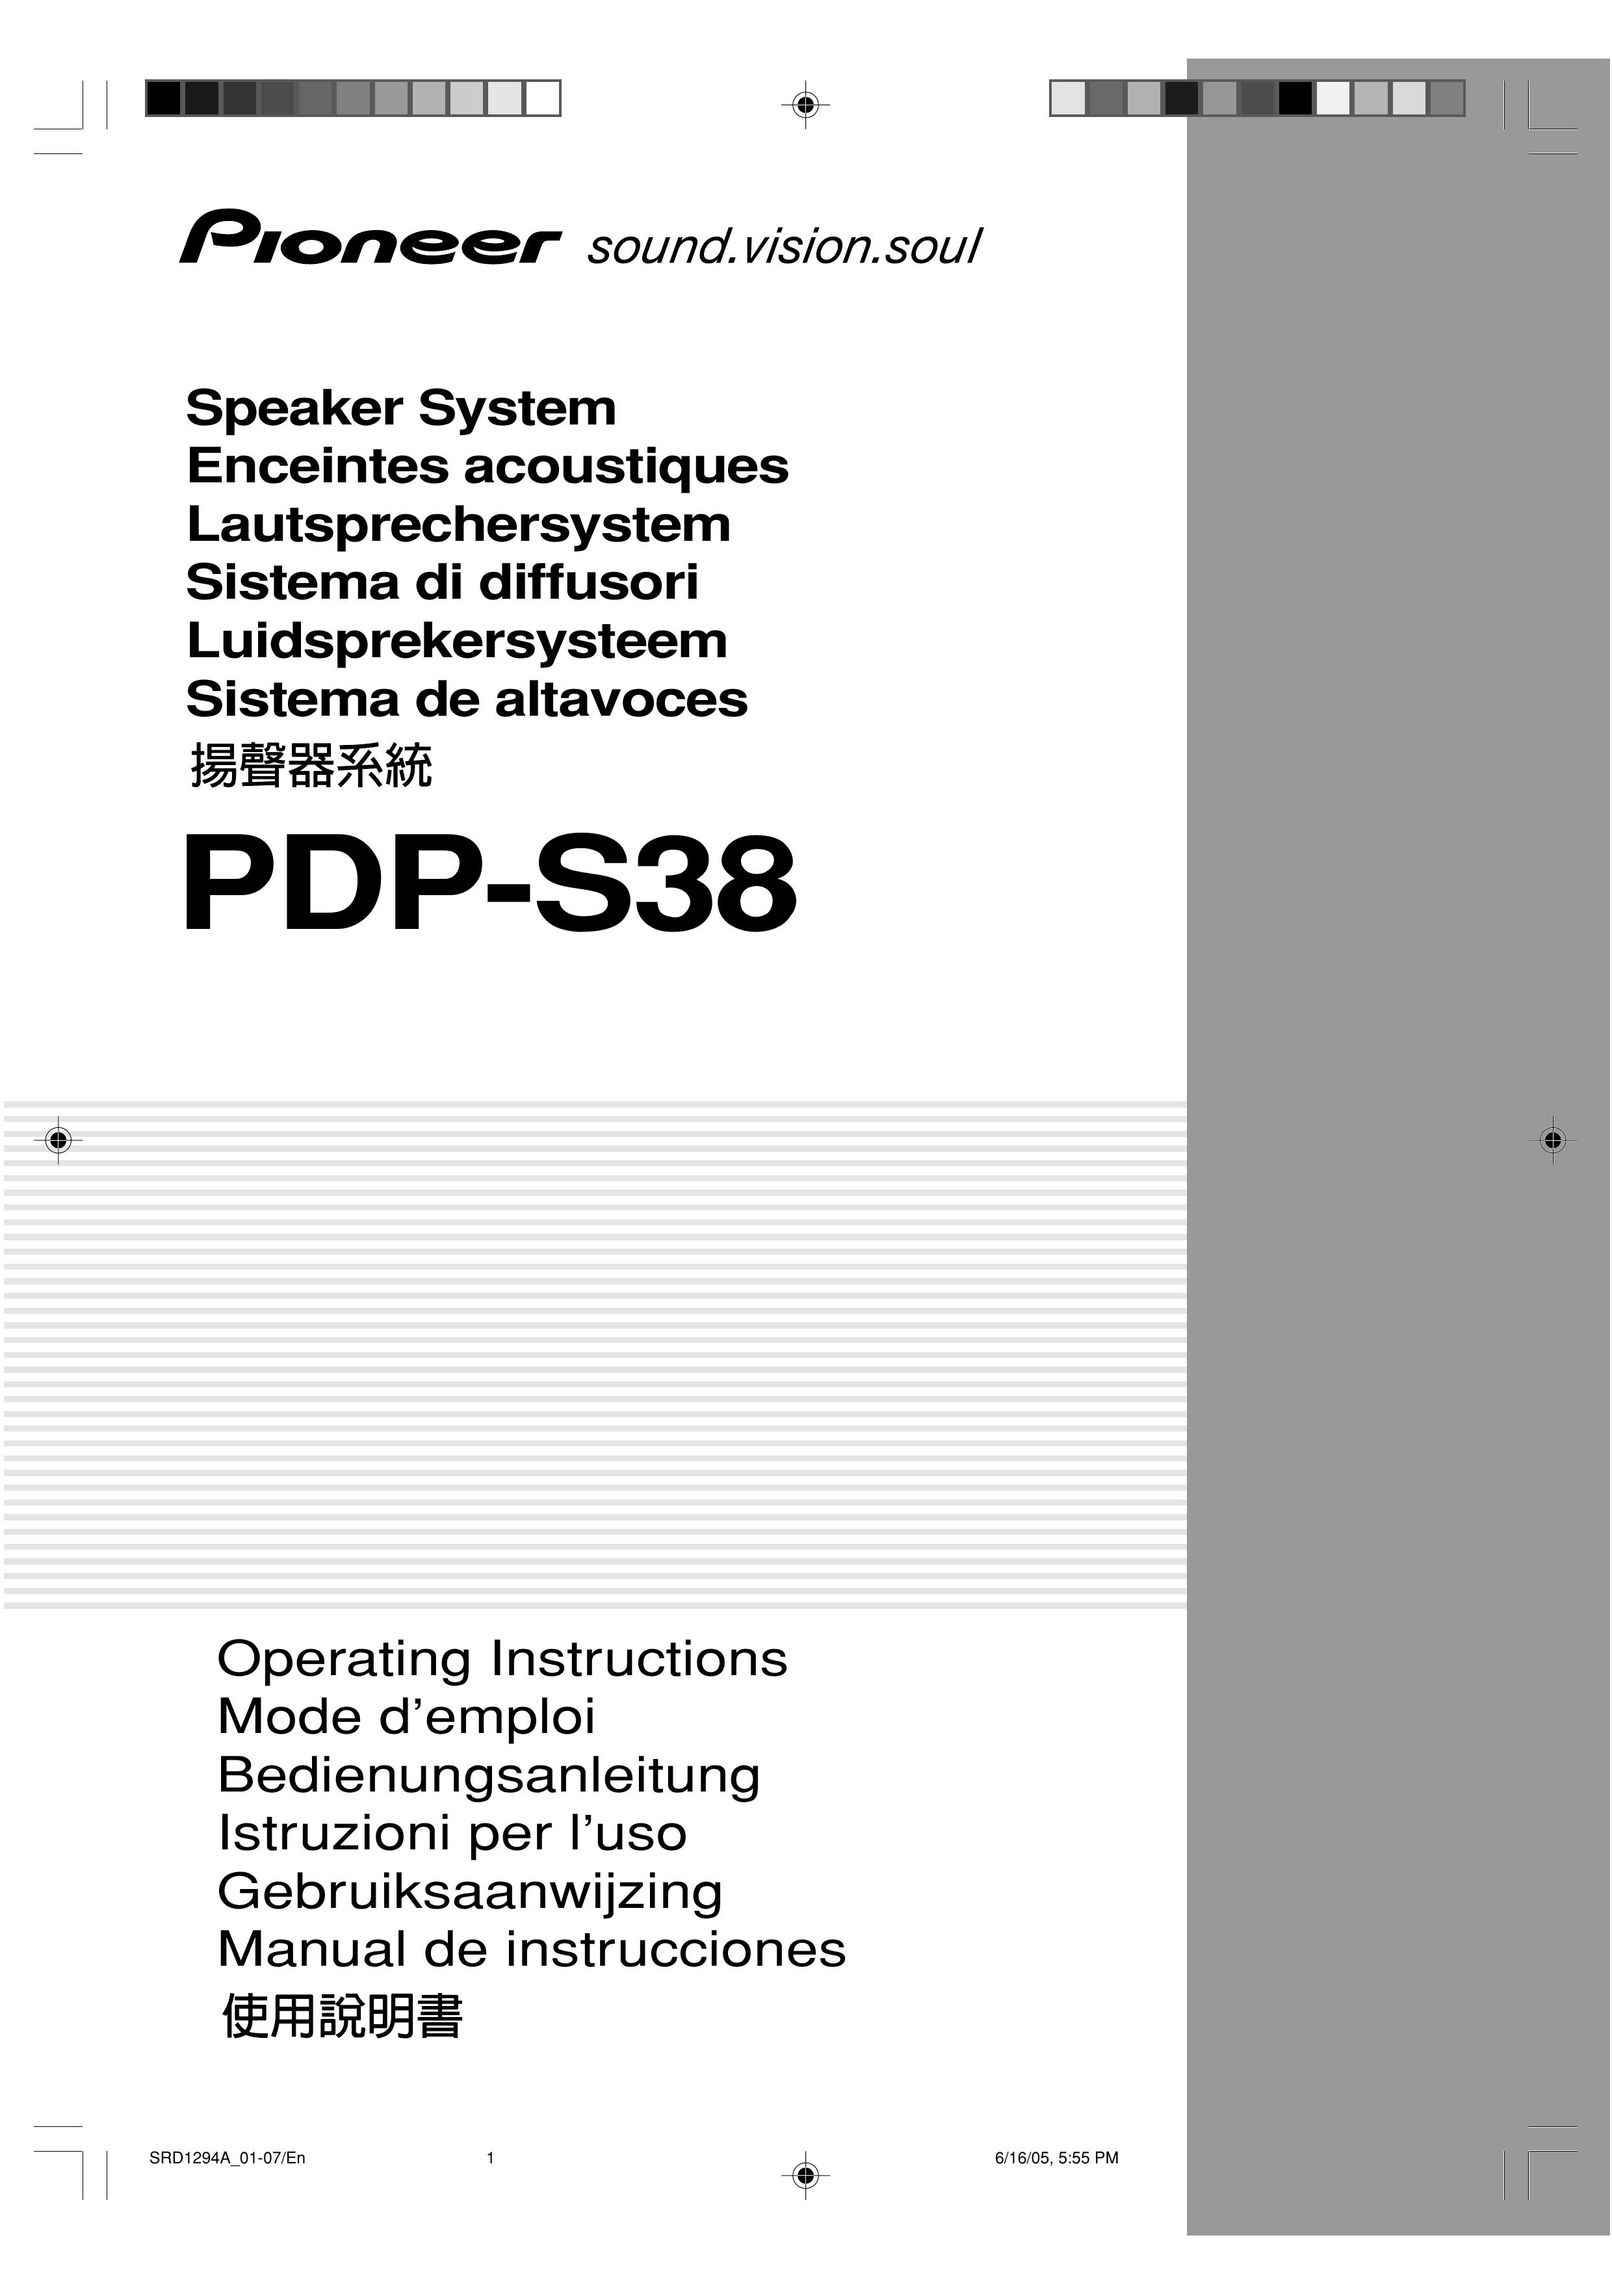 Pioneer PDP-S38 Speaker System User Manual